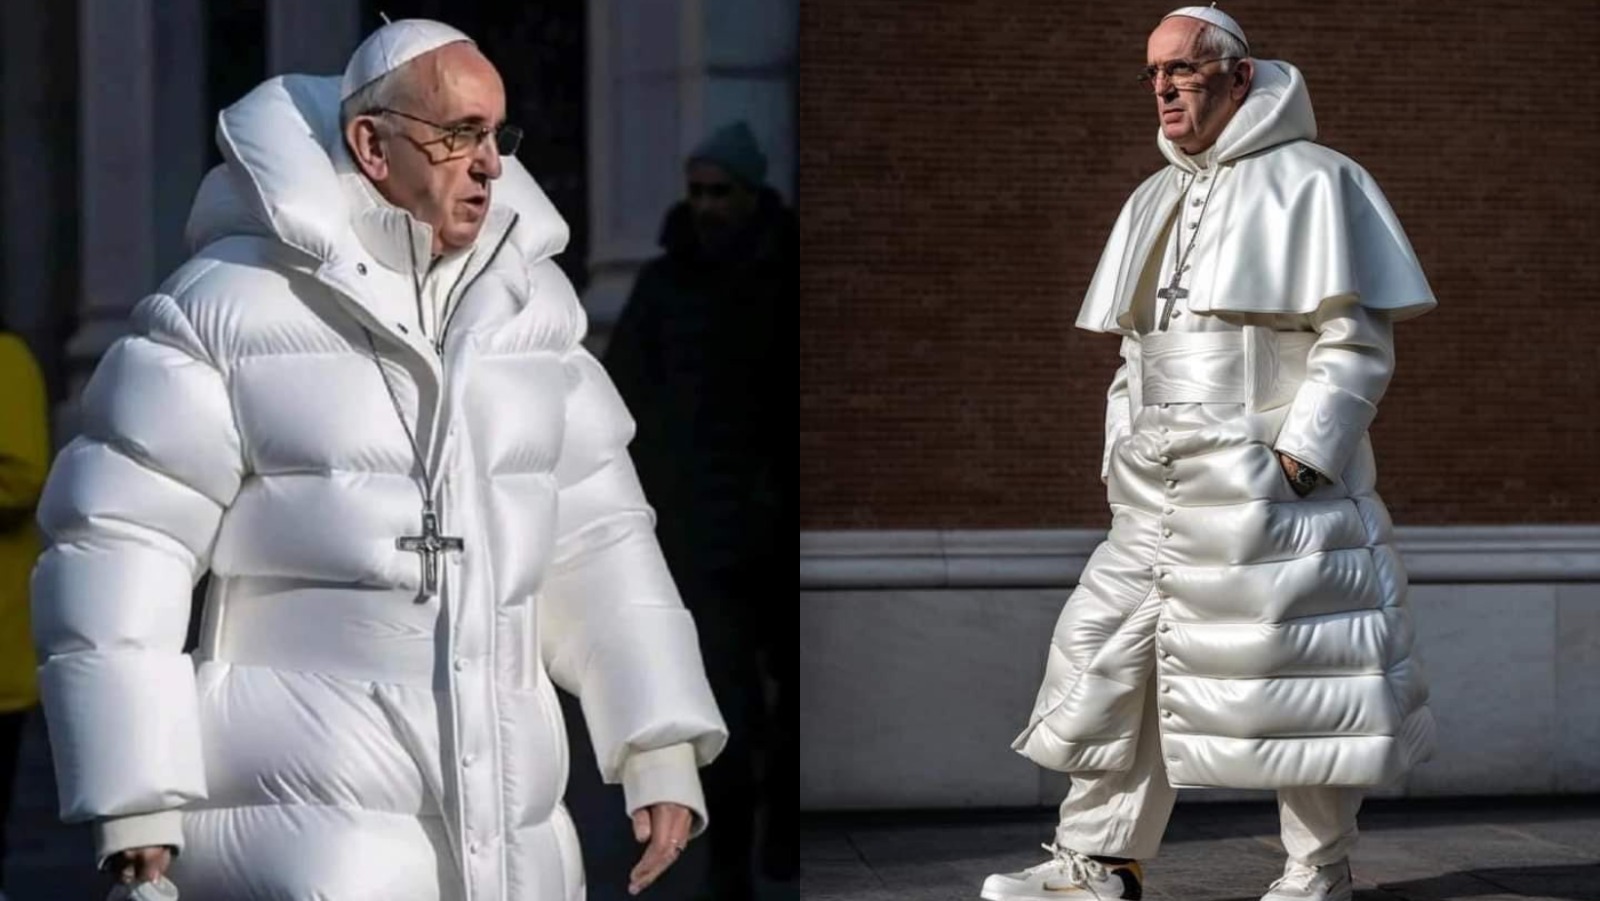 El papa Francisco y su controversial look de trapero ¿son reales las imágenes?